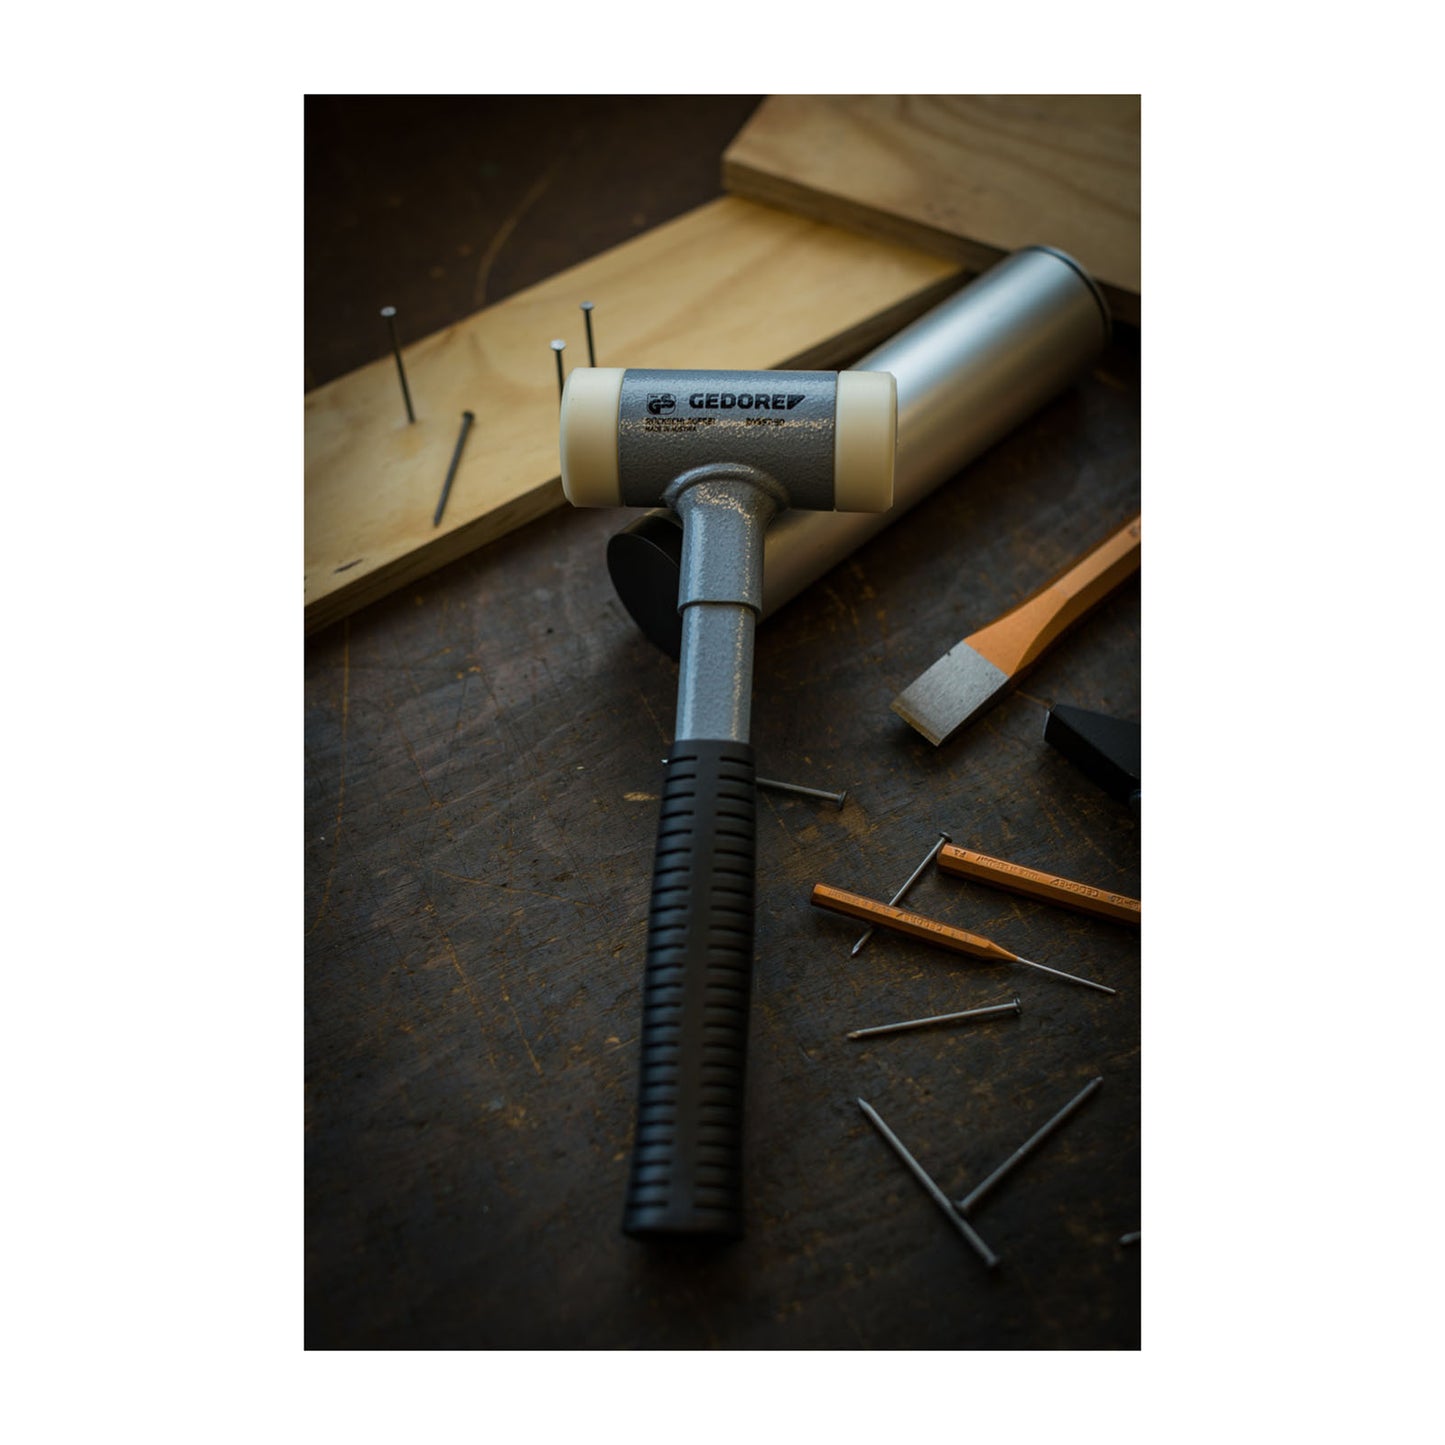 GEDORE 248 ST-60 - Anti-rebound hammer 60 mm (8829330)